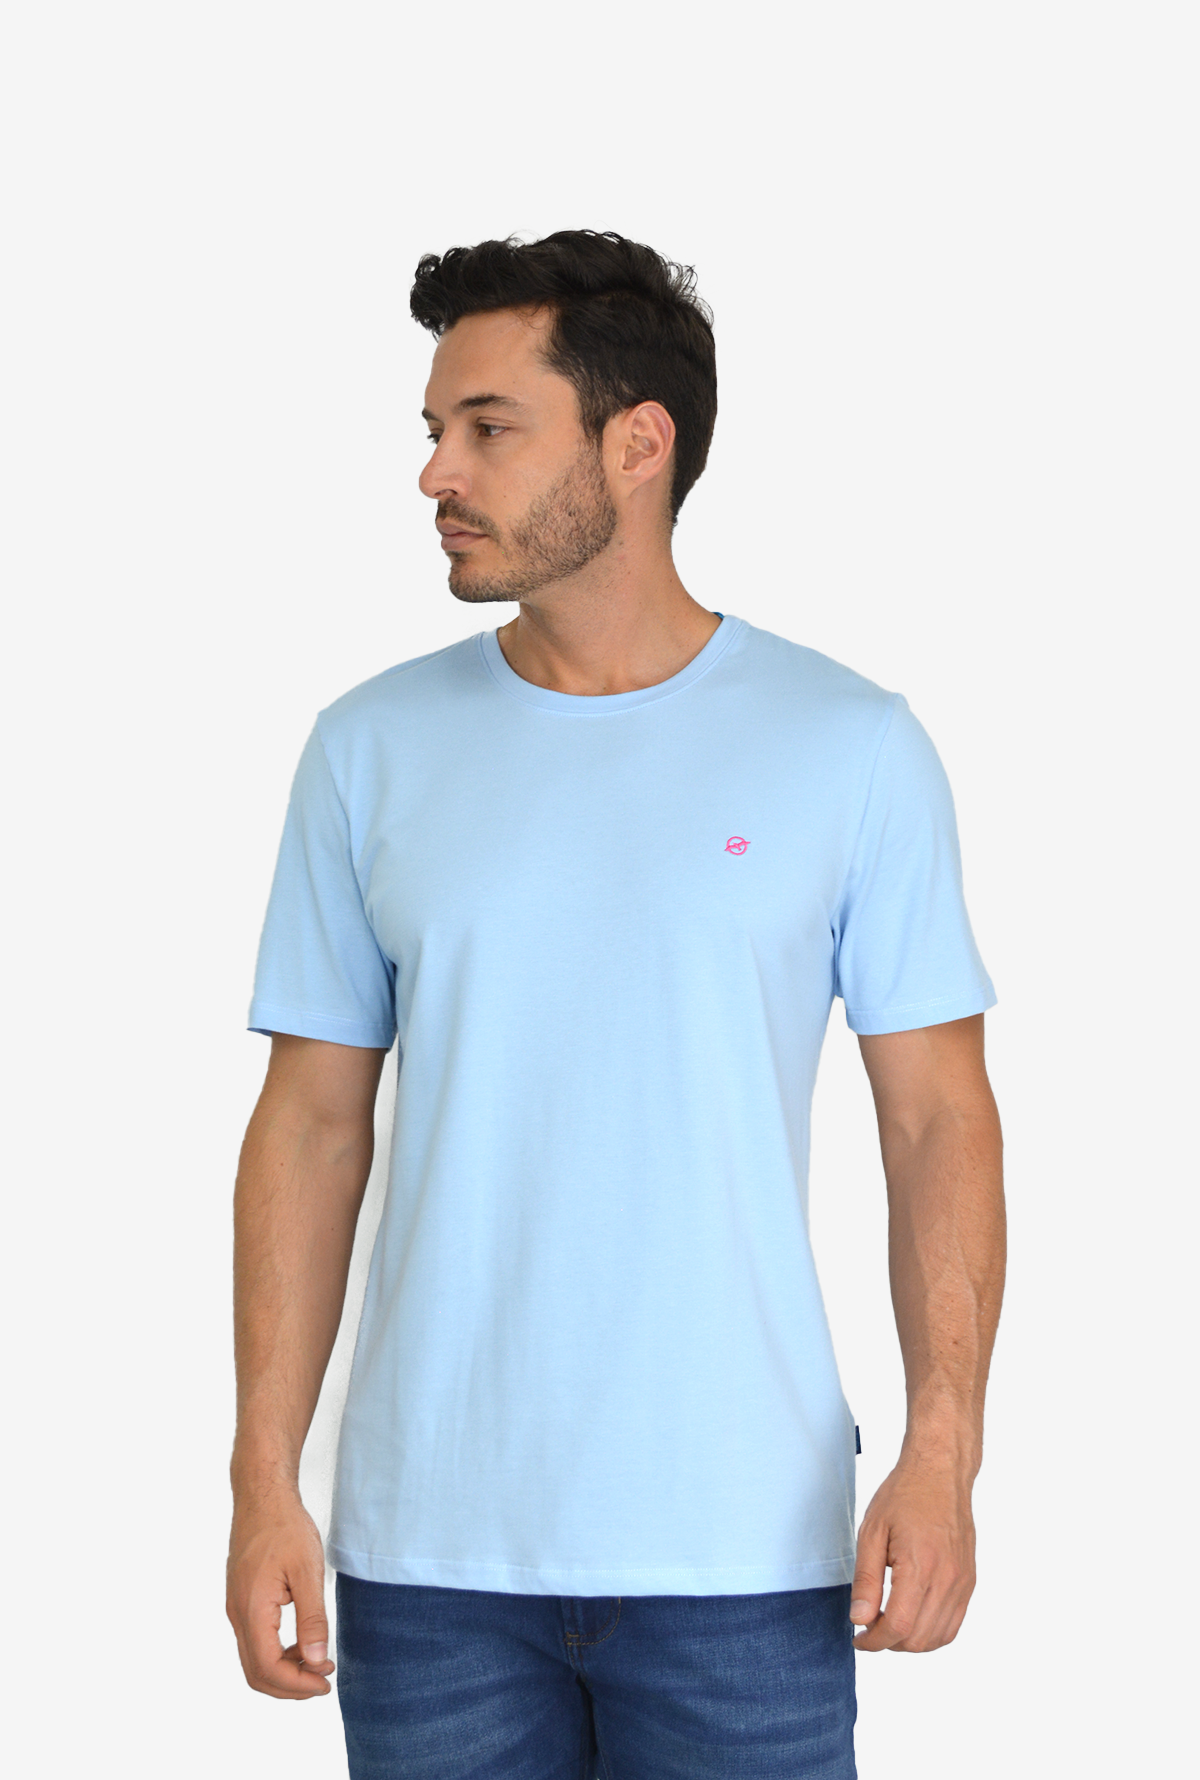 Camiseta Básica Azul Claro Para Hombre TSB002 – Delascar